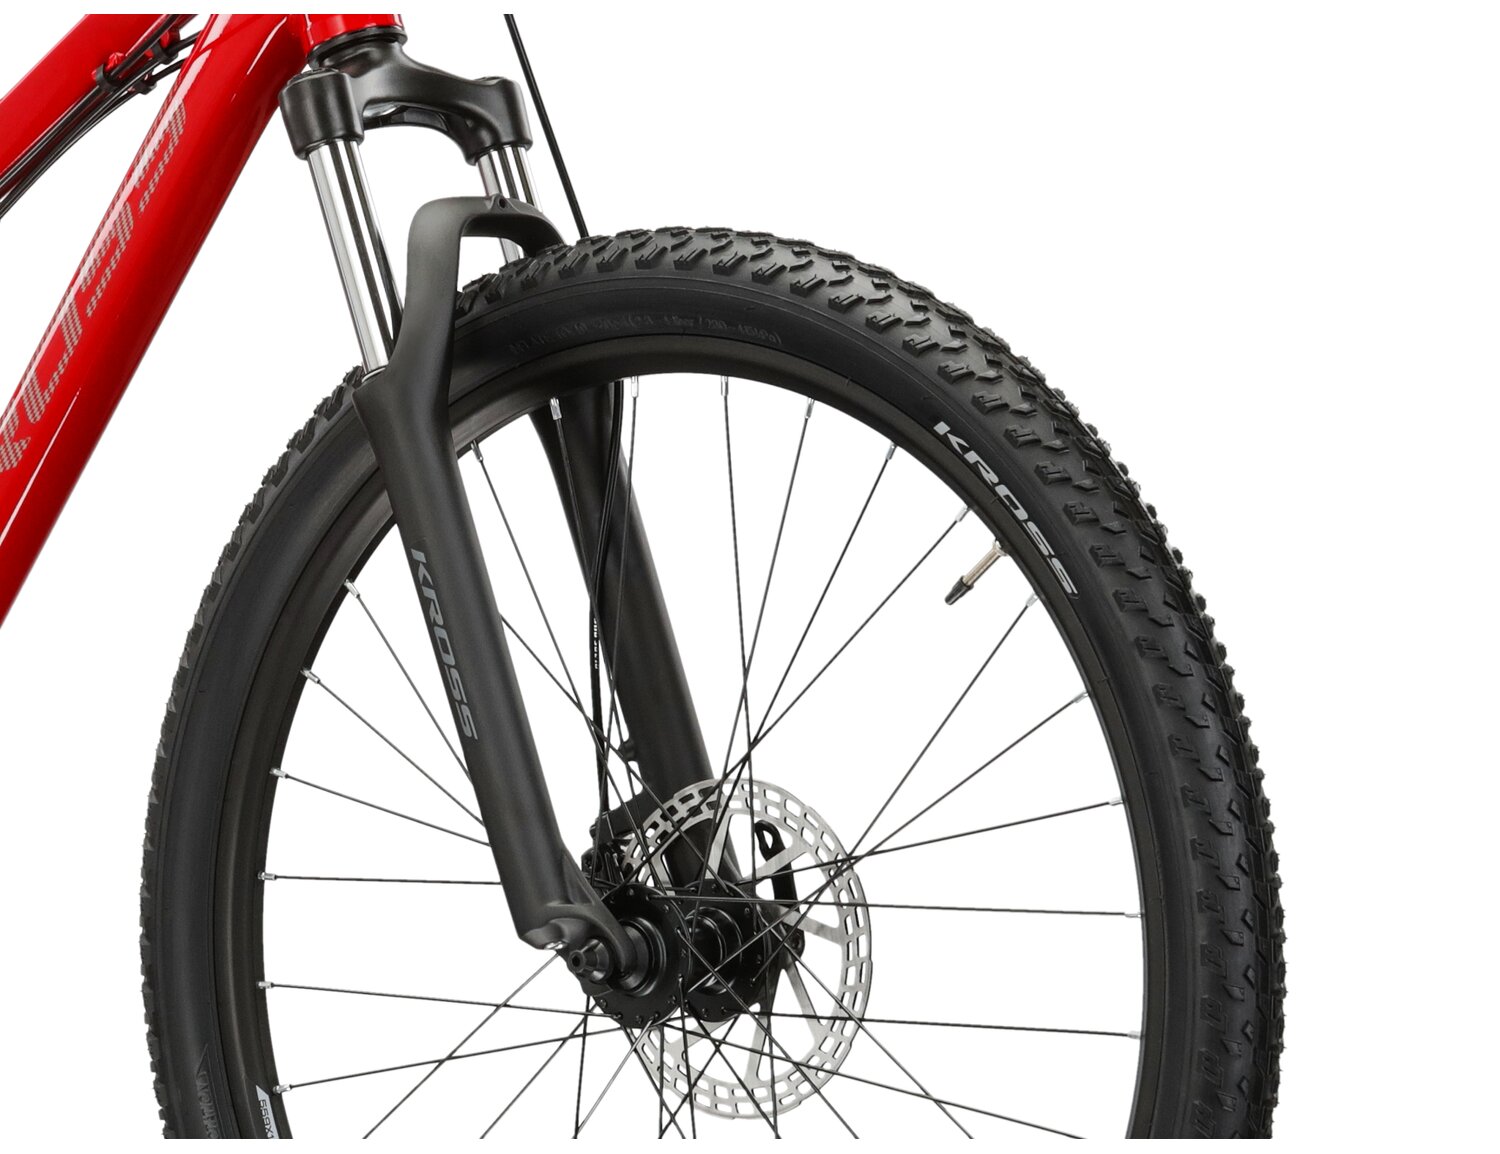  Aluminowa rama, amortyzowany widelec Zoom Forgo656 o skoku 80mm oraz opony o szerokości 2,1 cala w rowerze juniorskim KROSS Esprit JR 1 